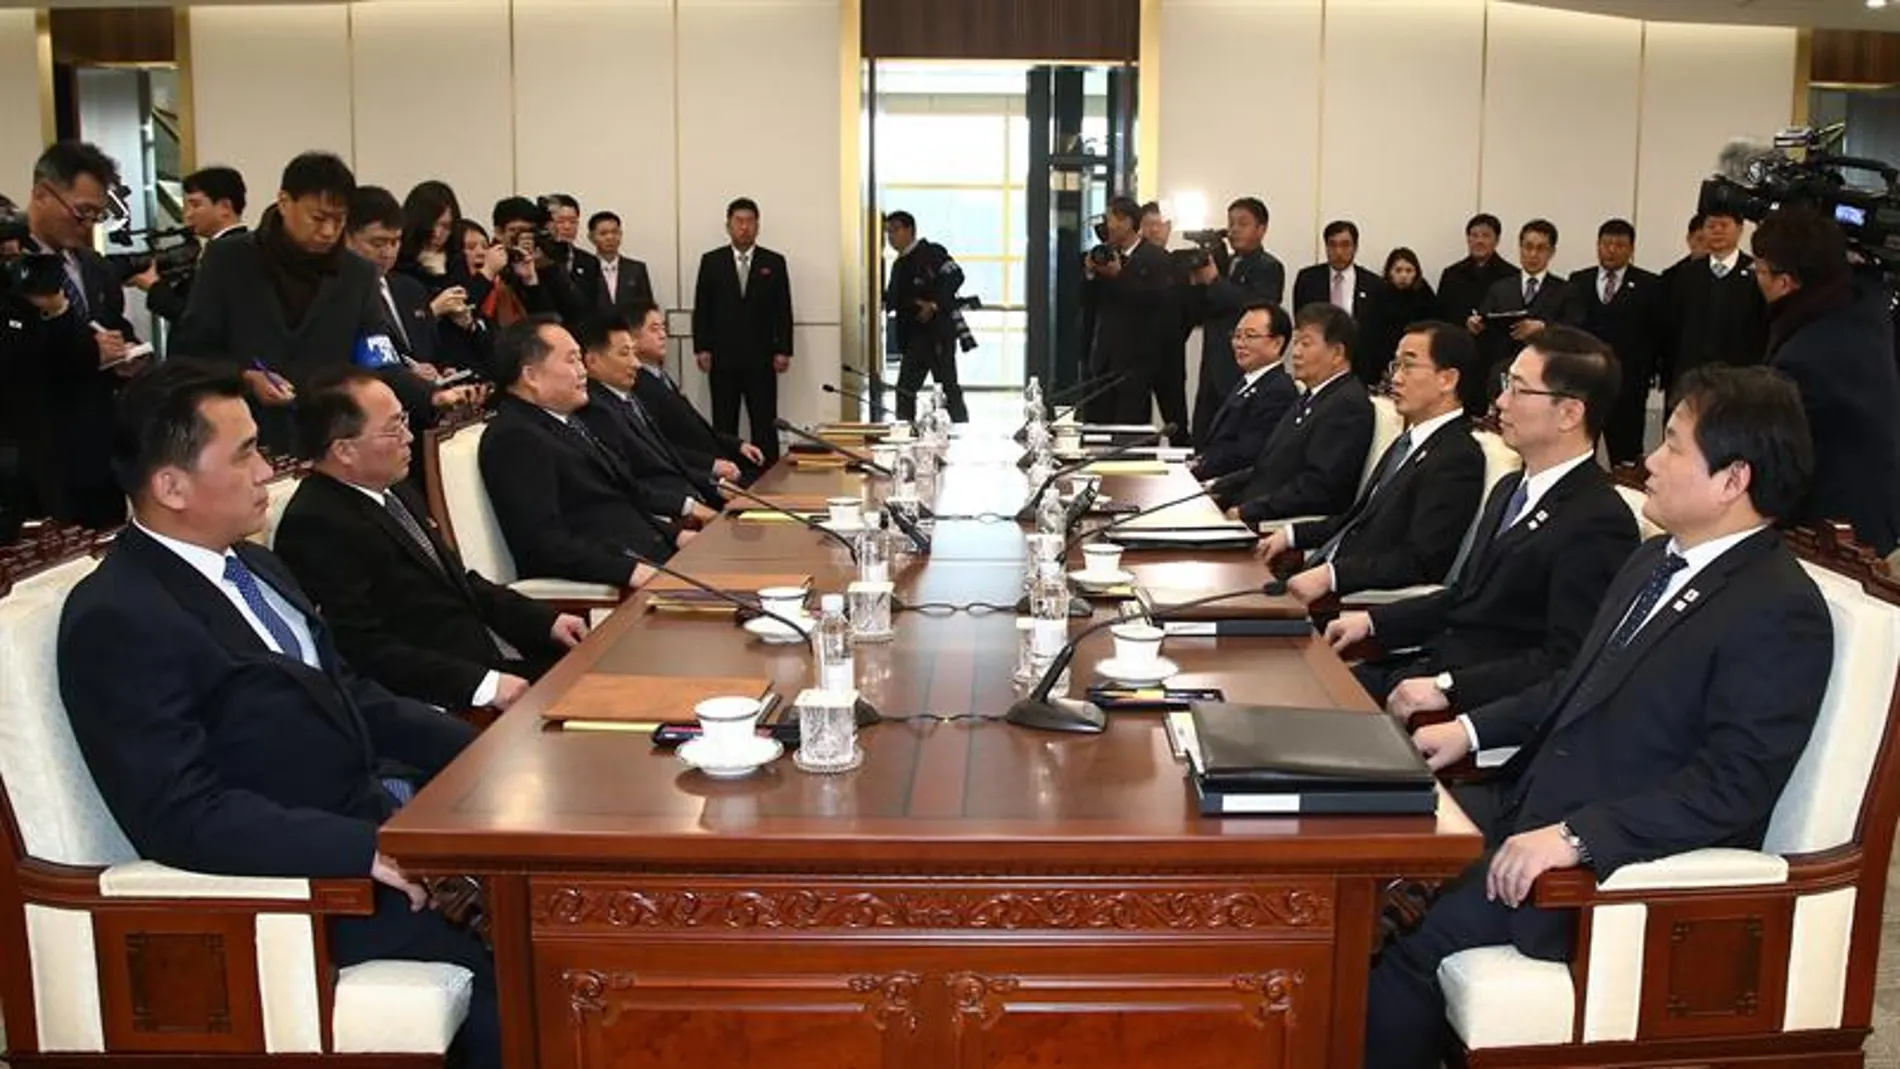 Las dos Coreas inician su primera reunión en más de dos años